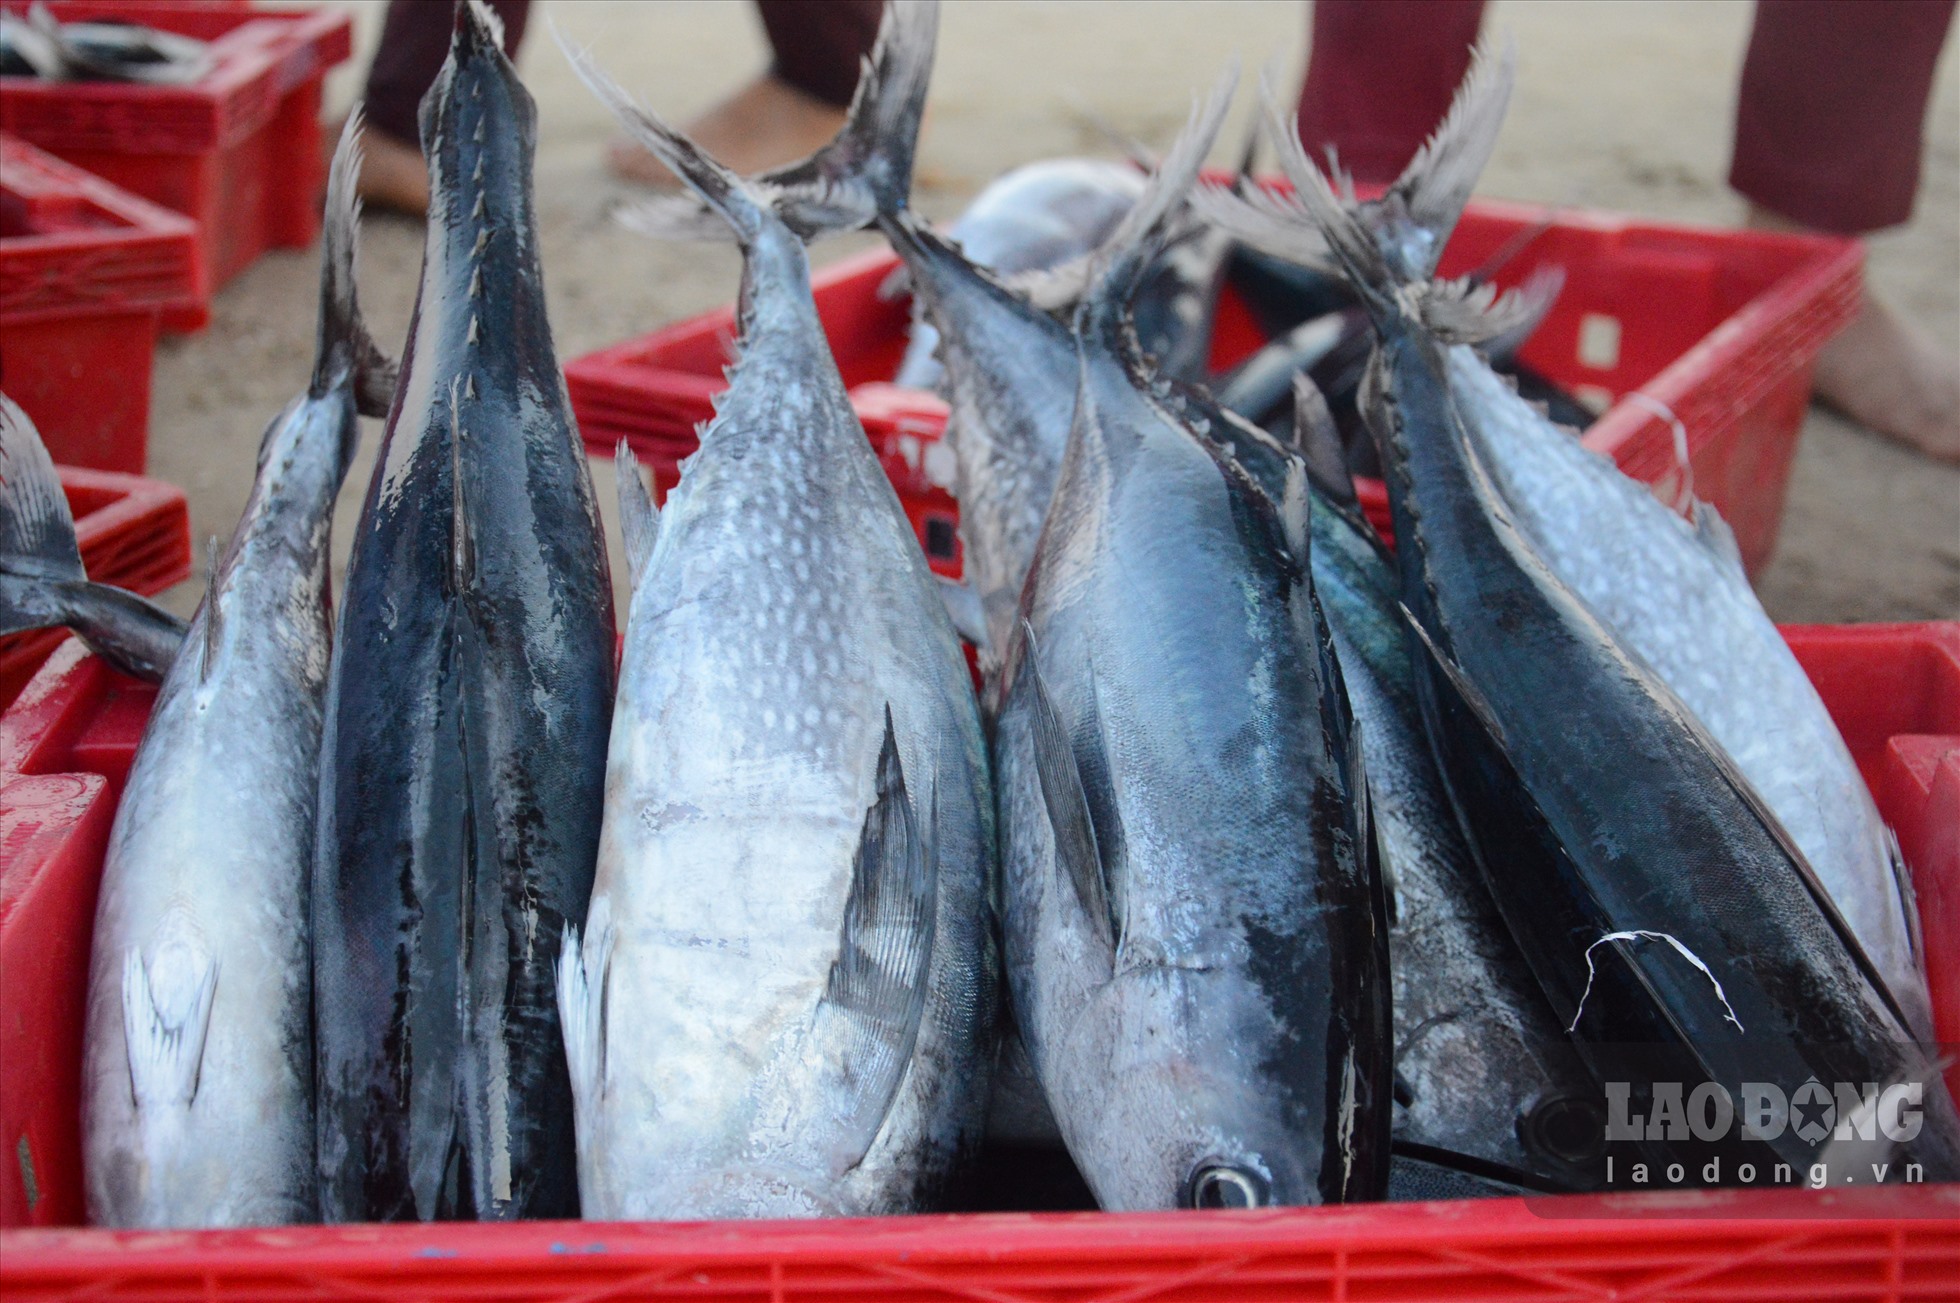 Chợ làng biển ở Quảng Ngãi, trên trời ánh bình minh, dưới tấp nập người mua bán, toàn thấy cá là cá - Ảnh 6.